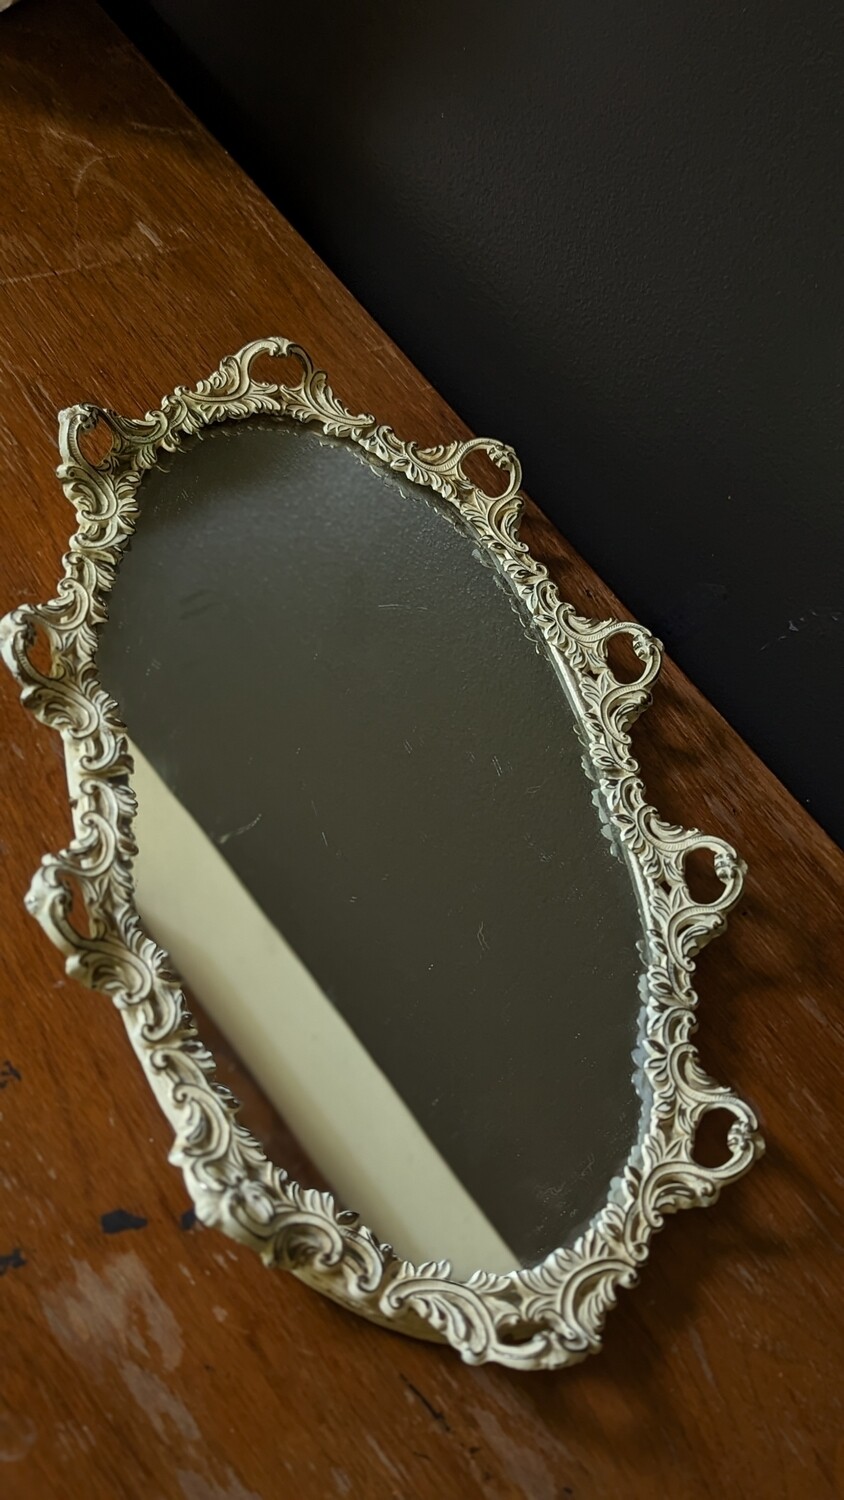 Mirror tray